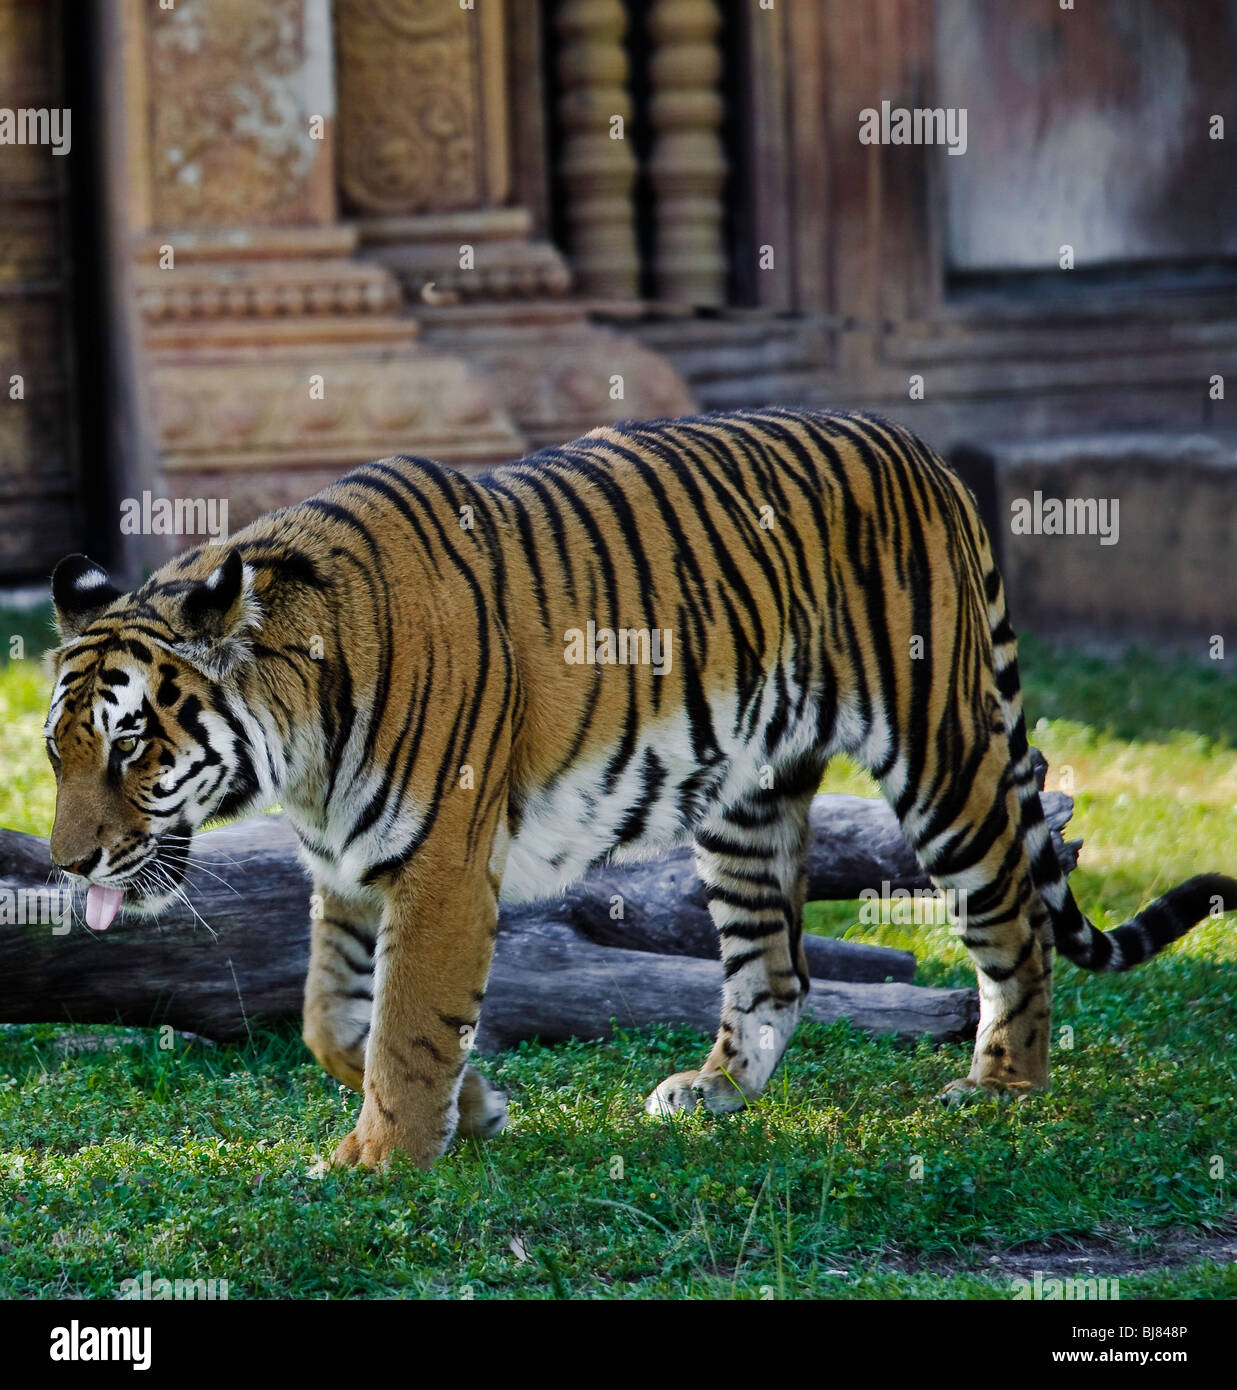 Bengal Tiger, Bewohner von Miami Metrozoo. Jeder Tiger hat ein unverwechselbares abstreifenden Muster. Stockfoto